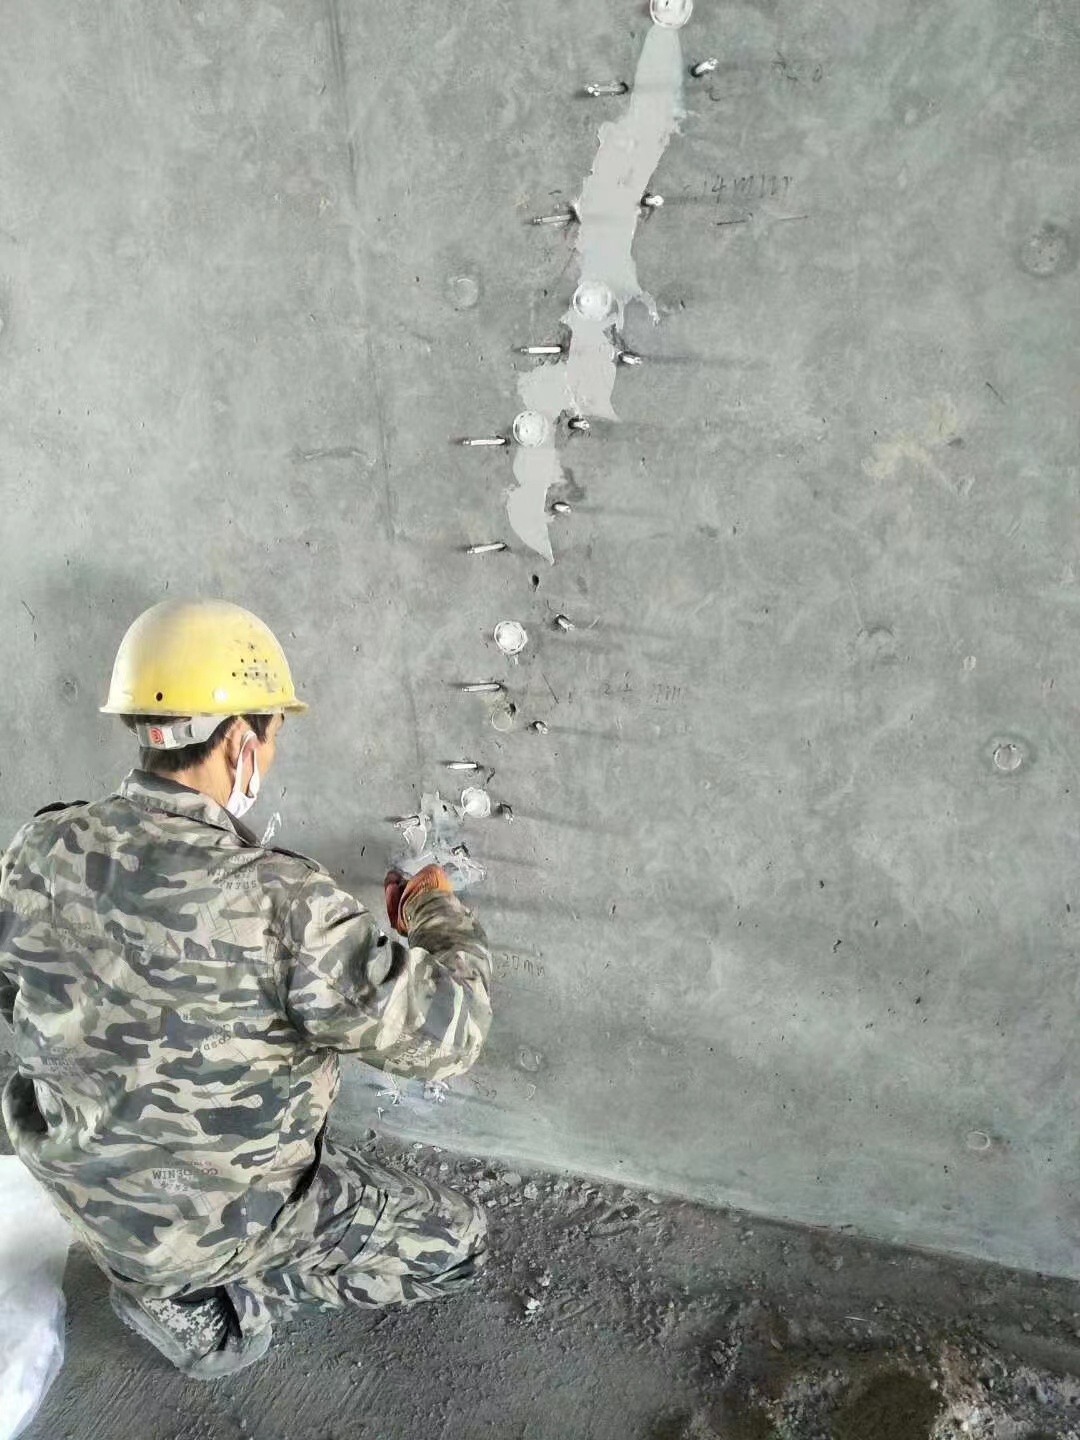 桂阳混凝土楼板裂缝加固施工的方案